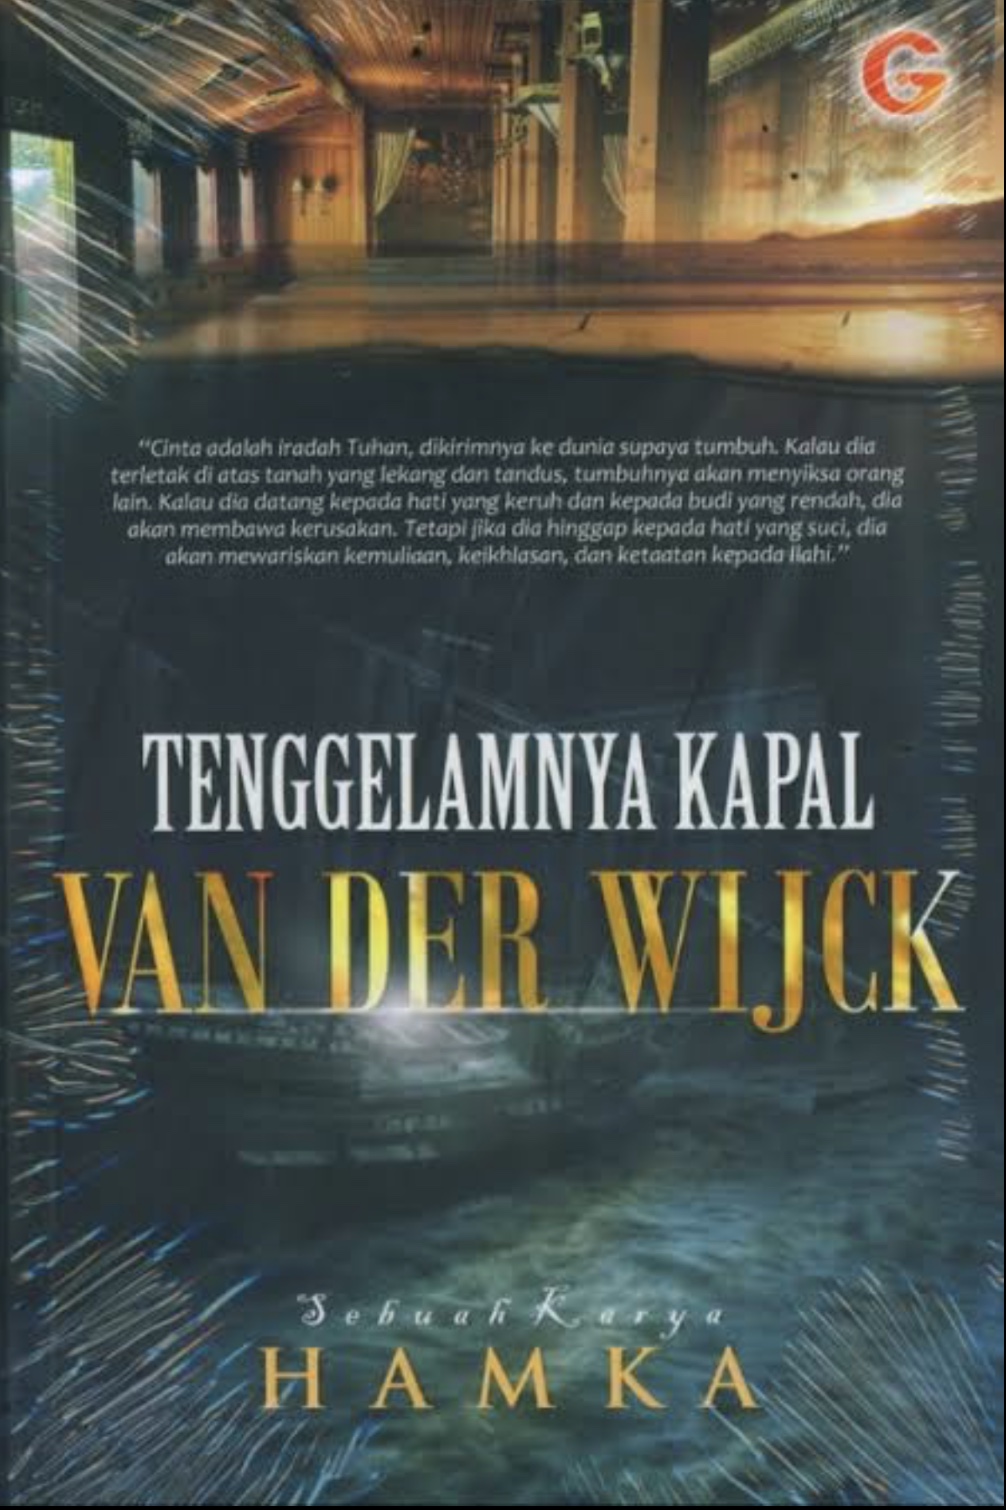 Sinopsis Novel Tenggelamnya Kapal Van Der Wijck